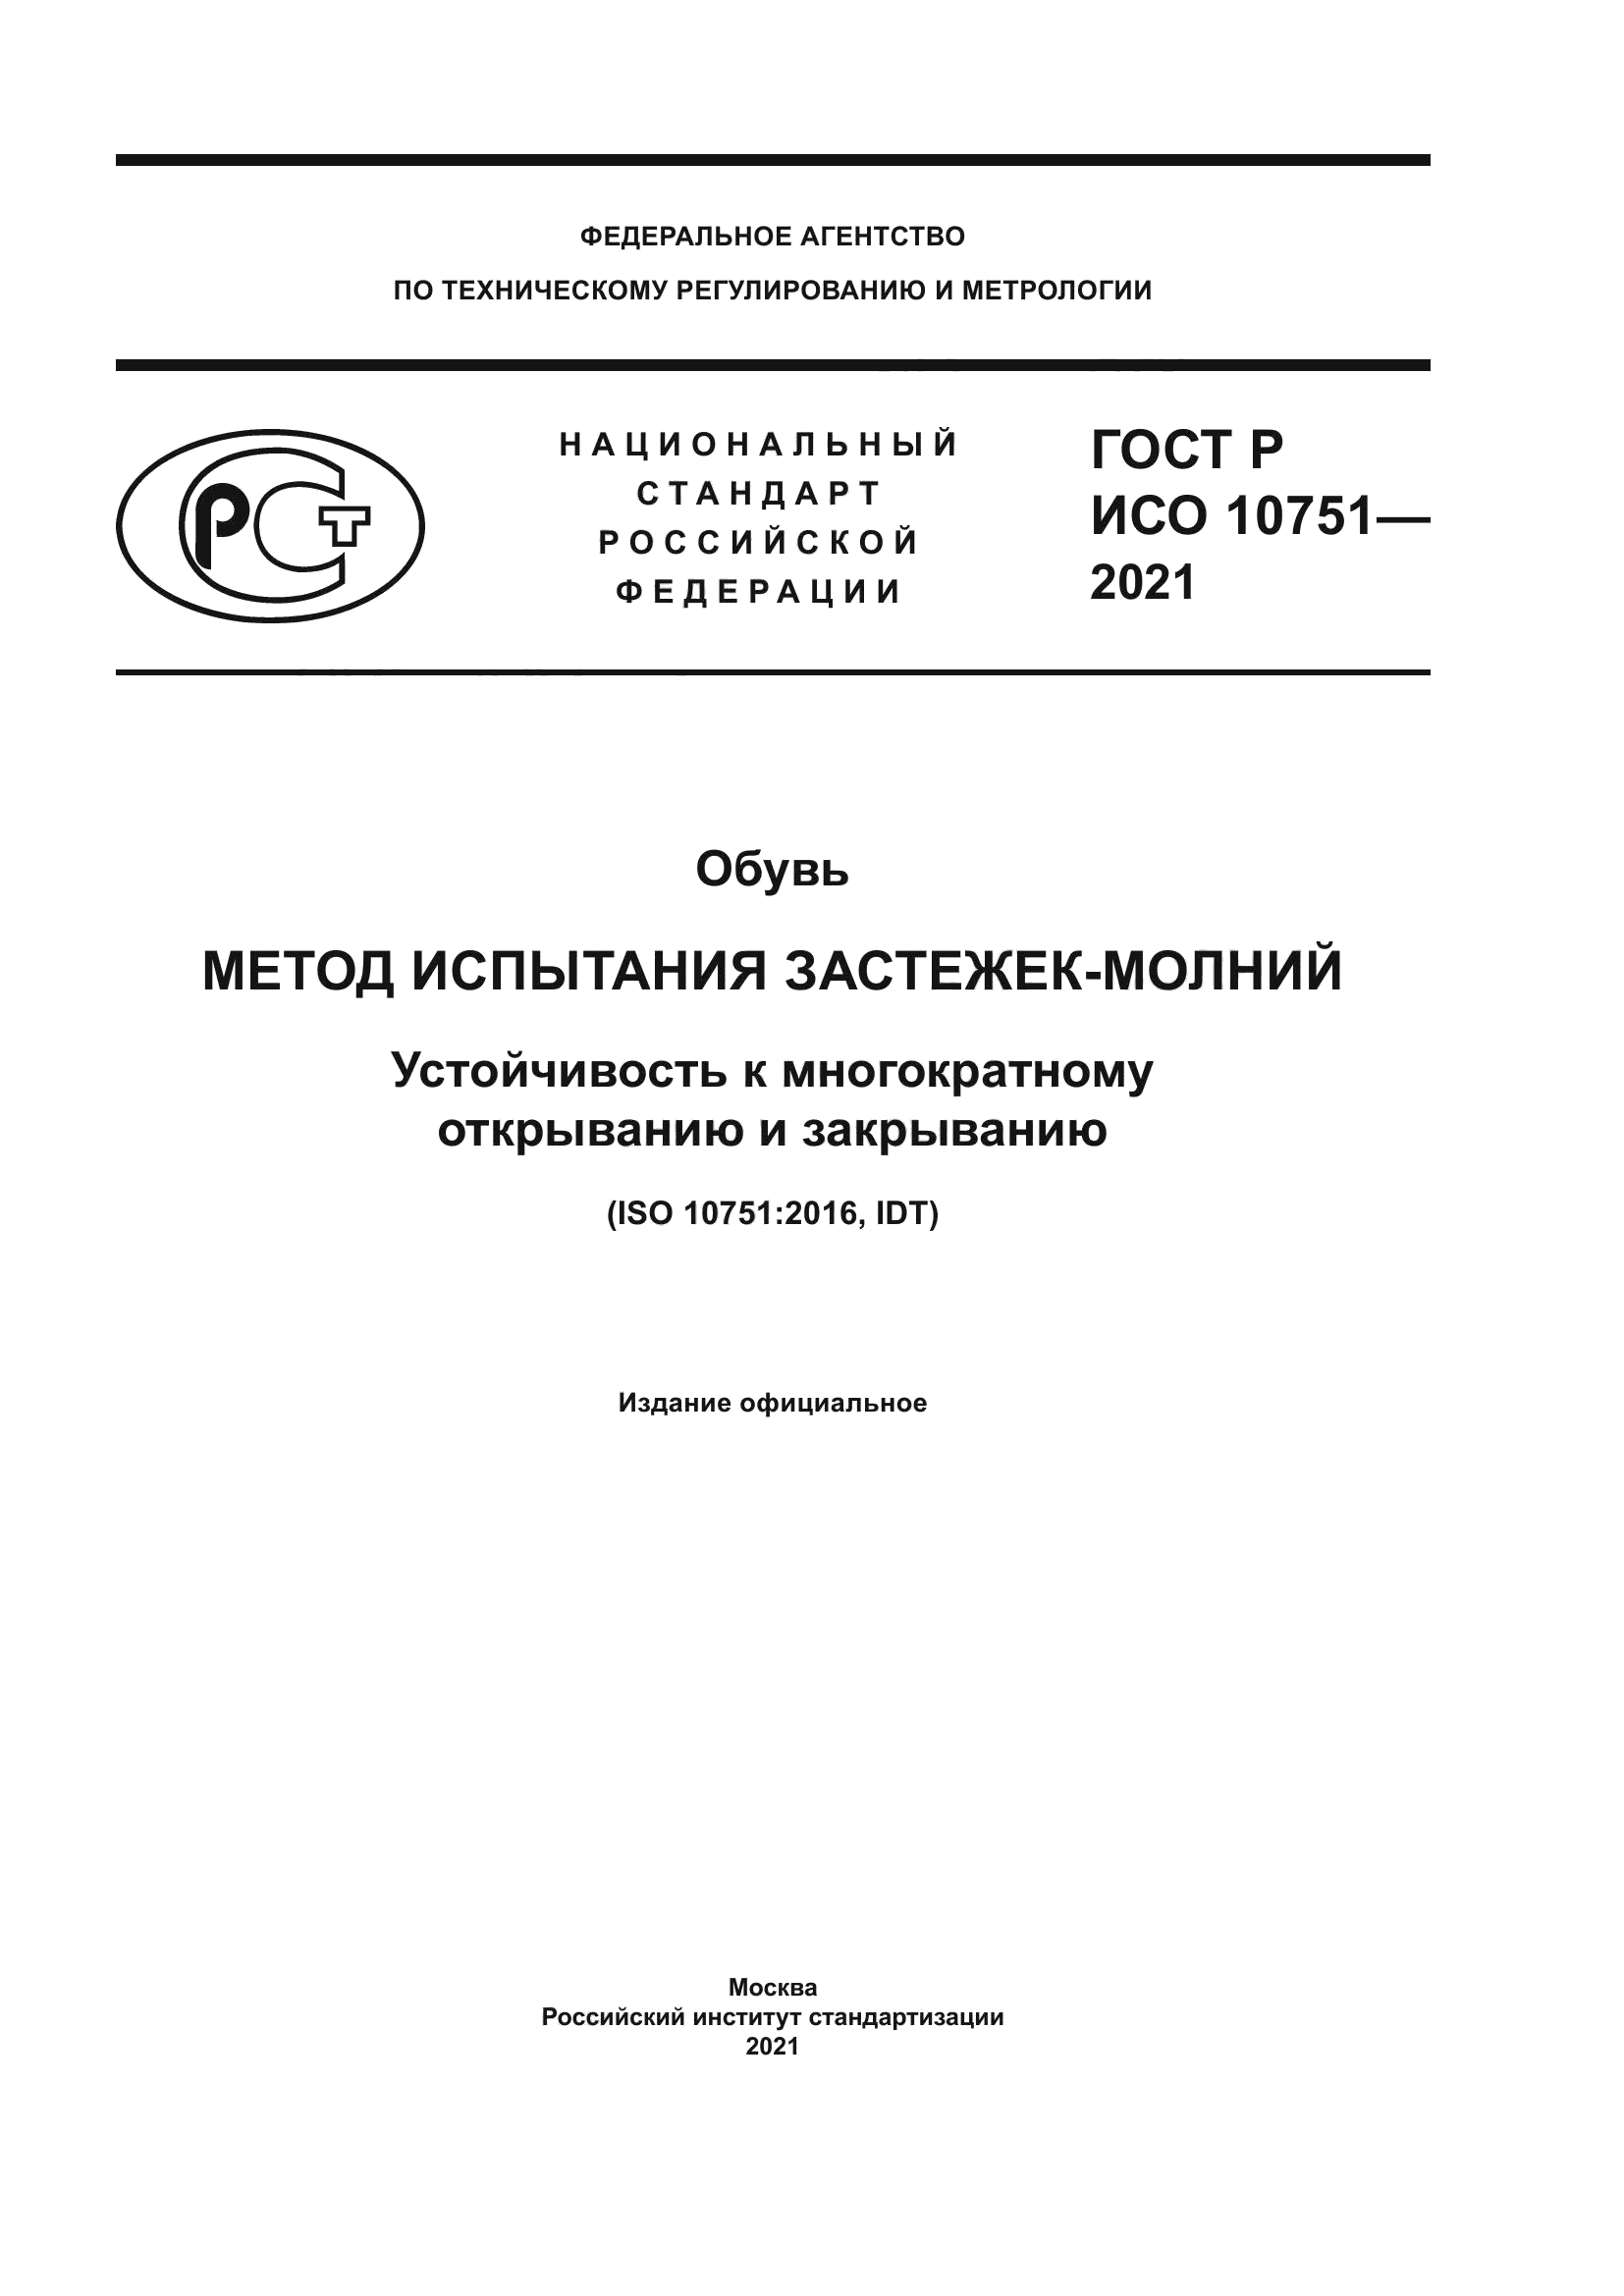 ГОСТ Р ИСО 10751-2021